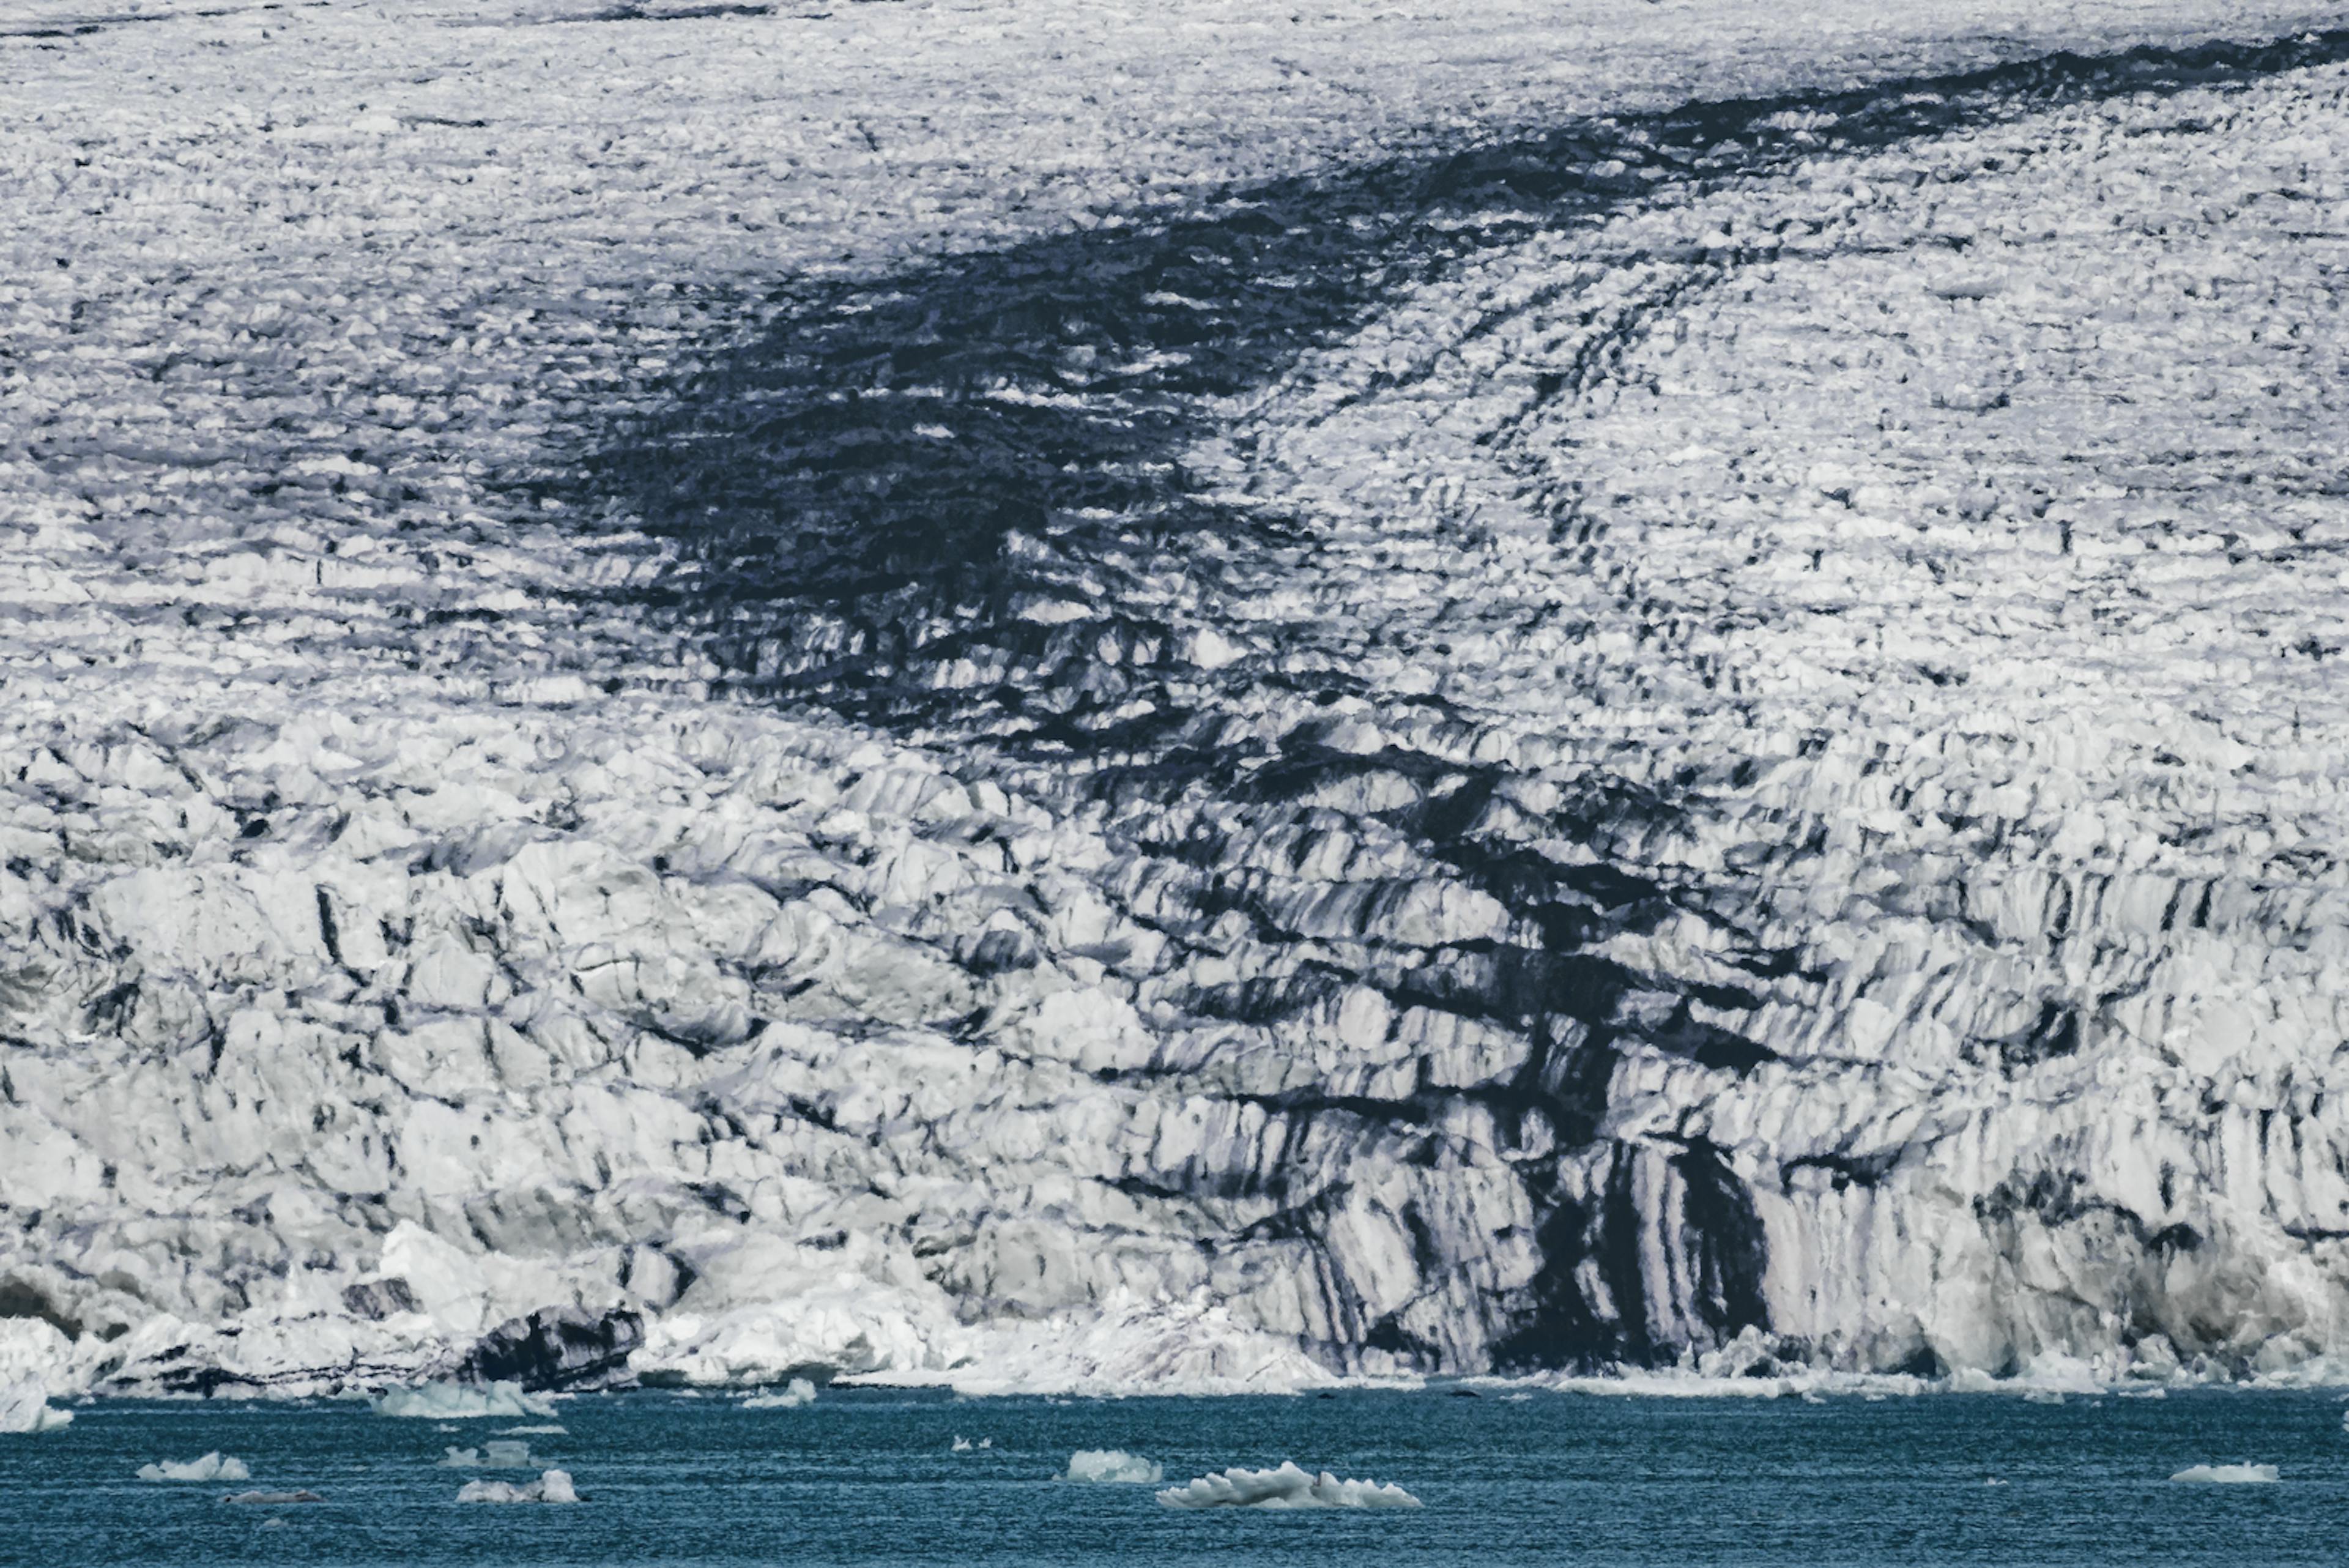 Breiðamerkurjökull Glacier connecting to lagoon